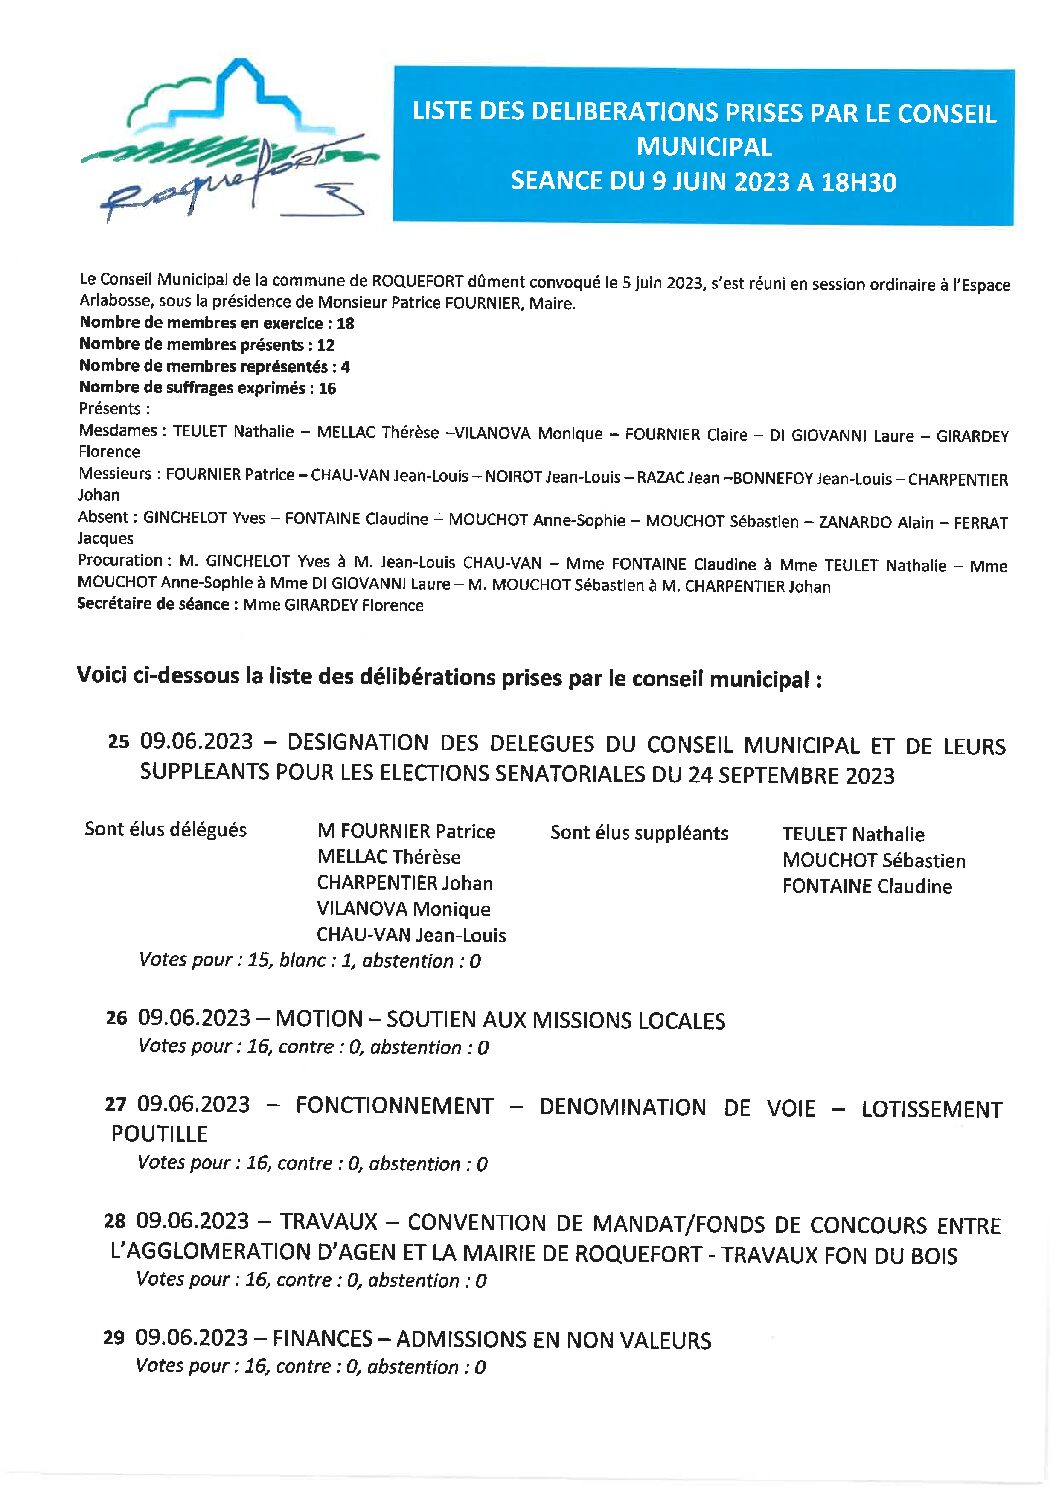 Liste des délibérations prises lors du conseil municipal du 09 juin 2023